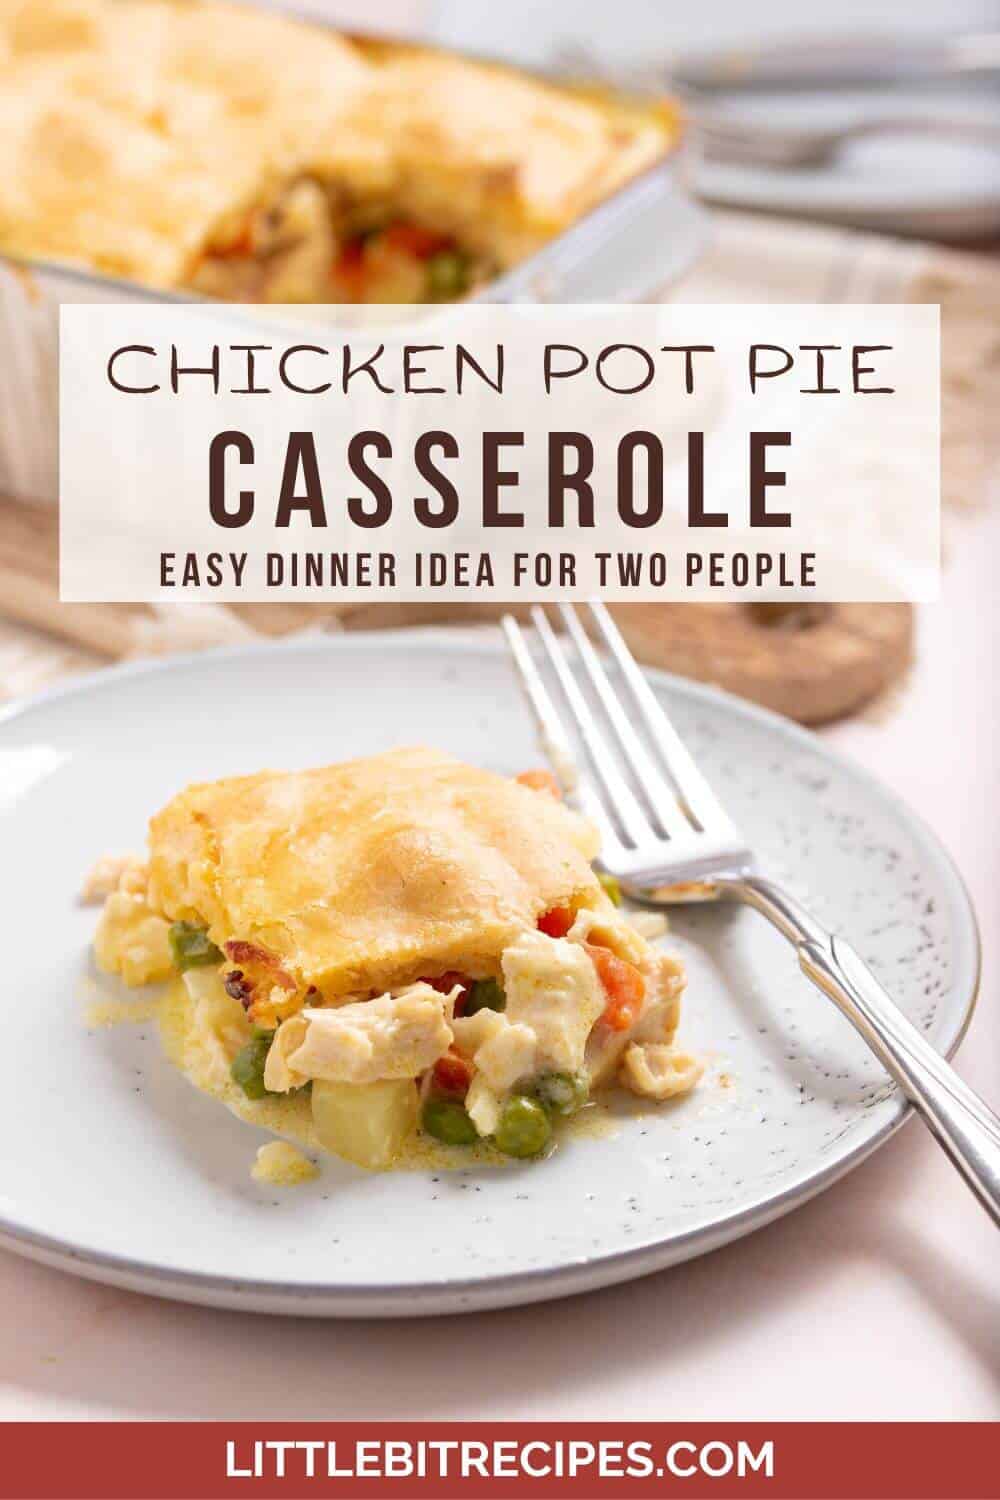 Chicken pot pie casserole with text.